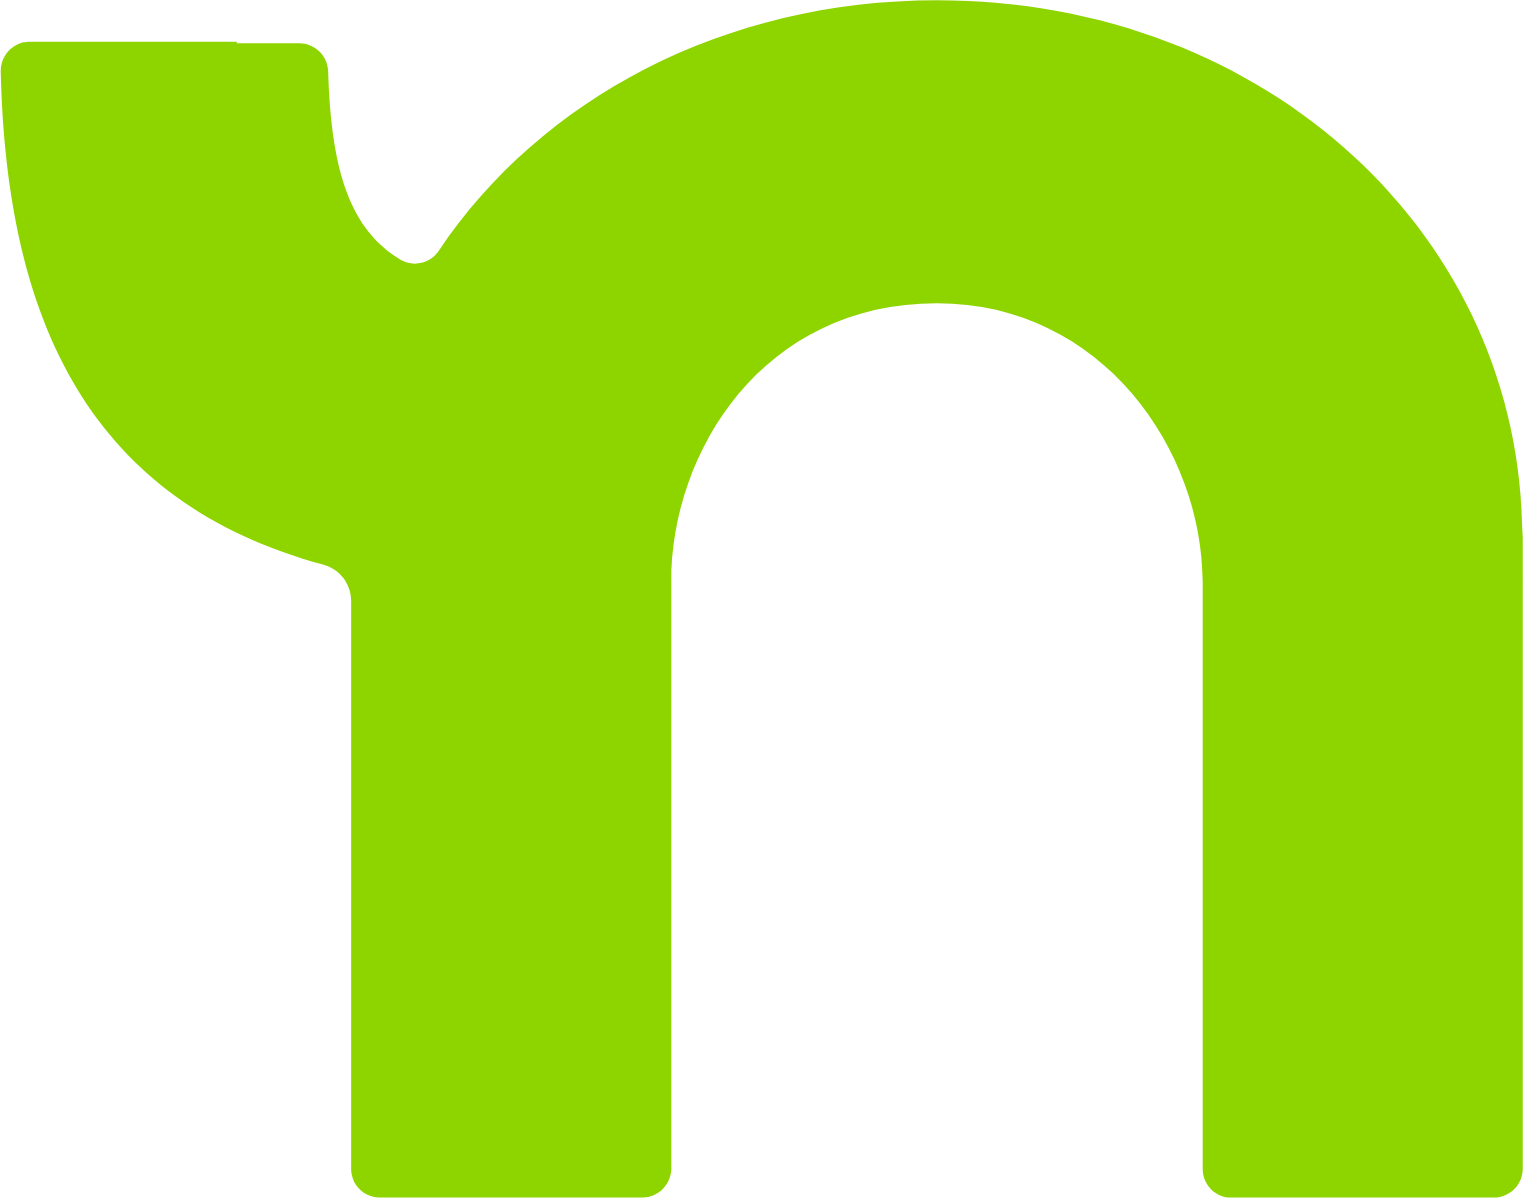 Nextdoor logo